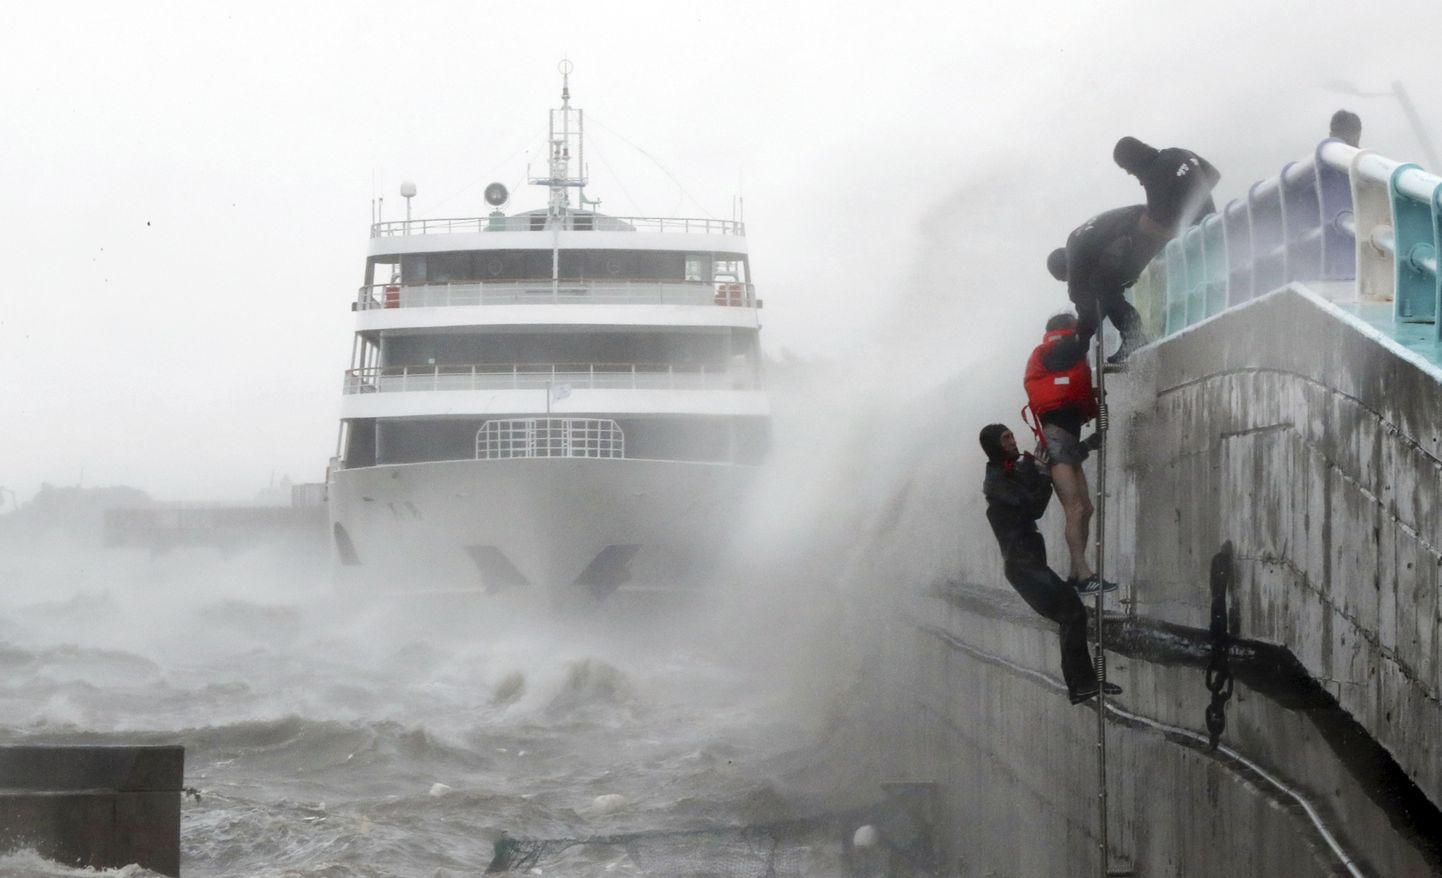 Merepolitsei päästmas reisilaeva meeskonnaliiget. Praam jäi lõksu riiki tabanud taifuuni tõttu.